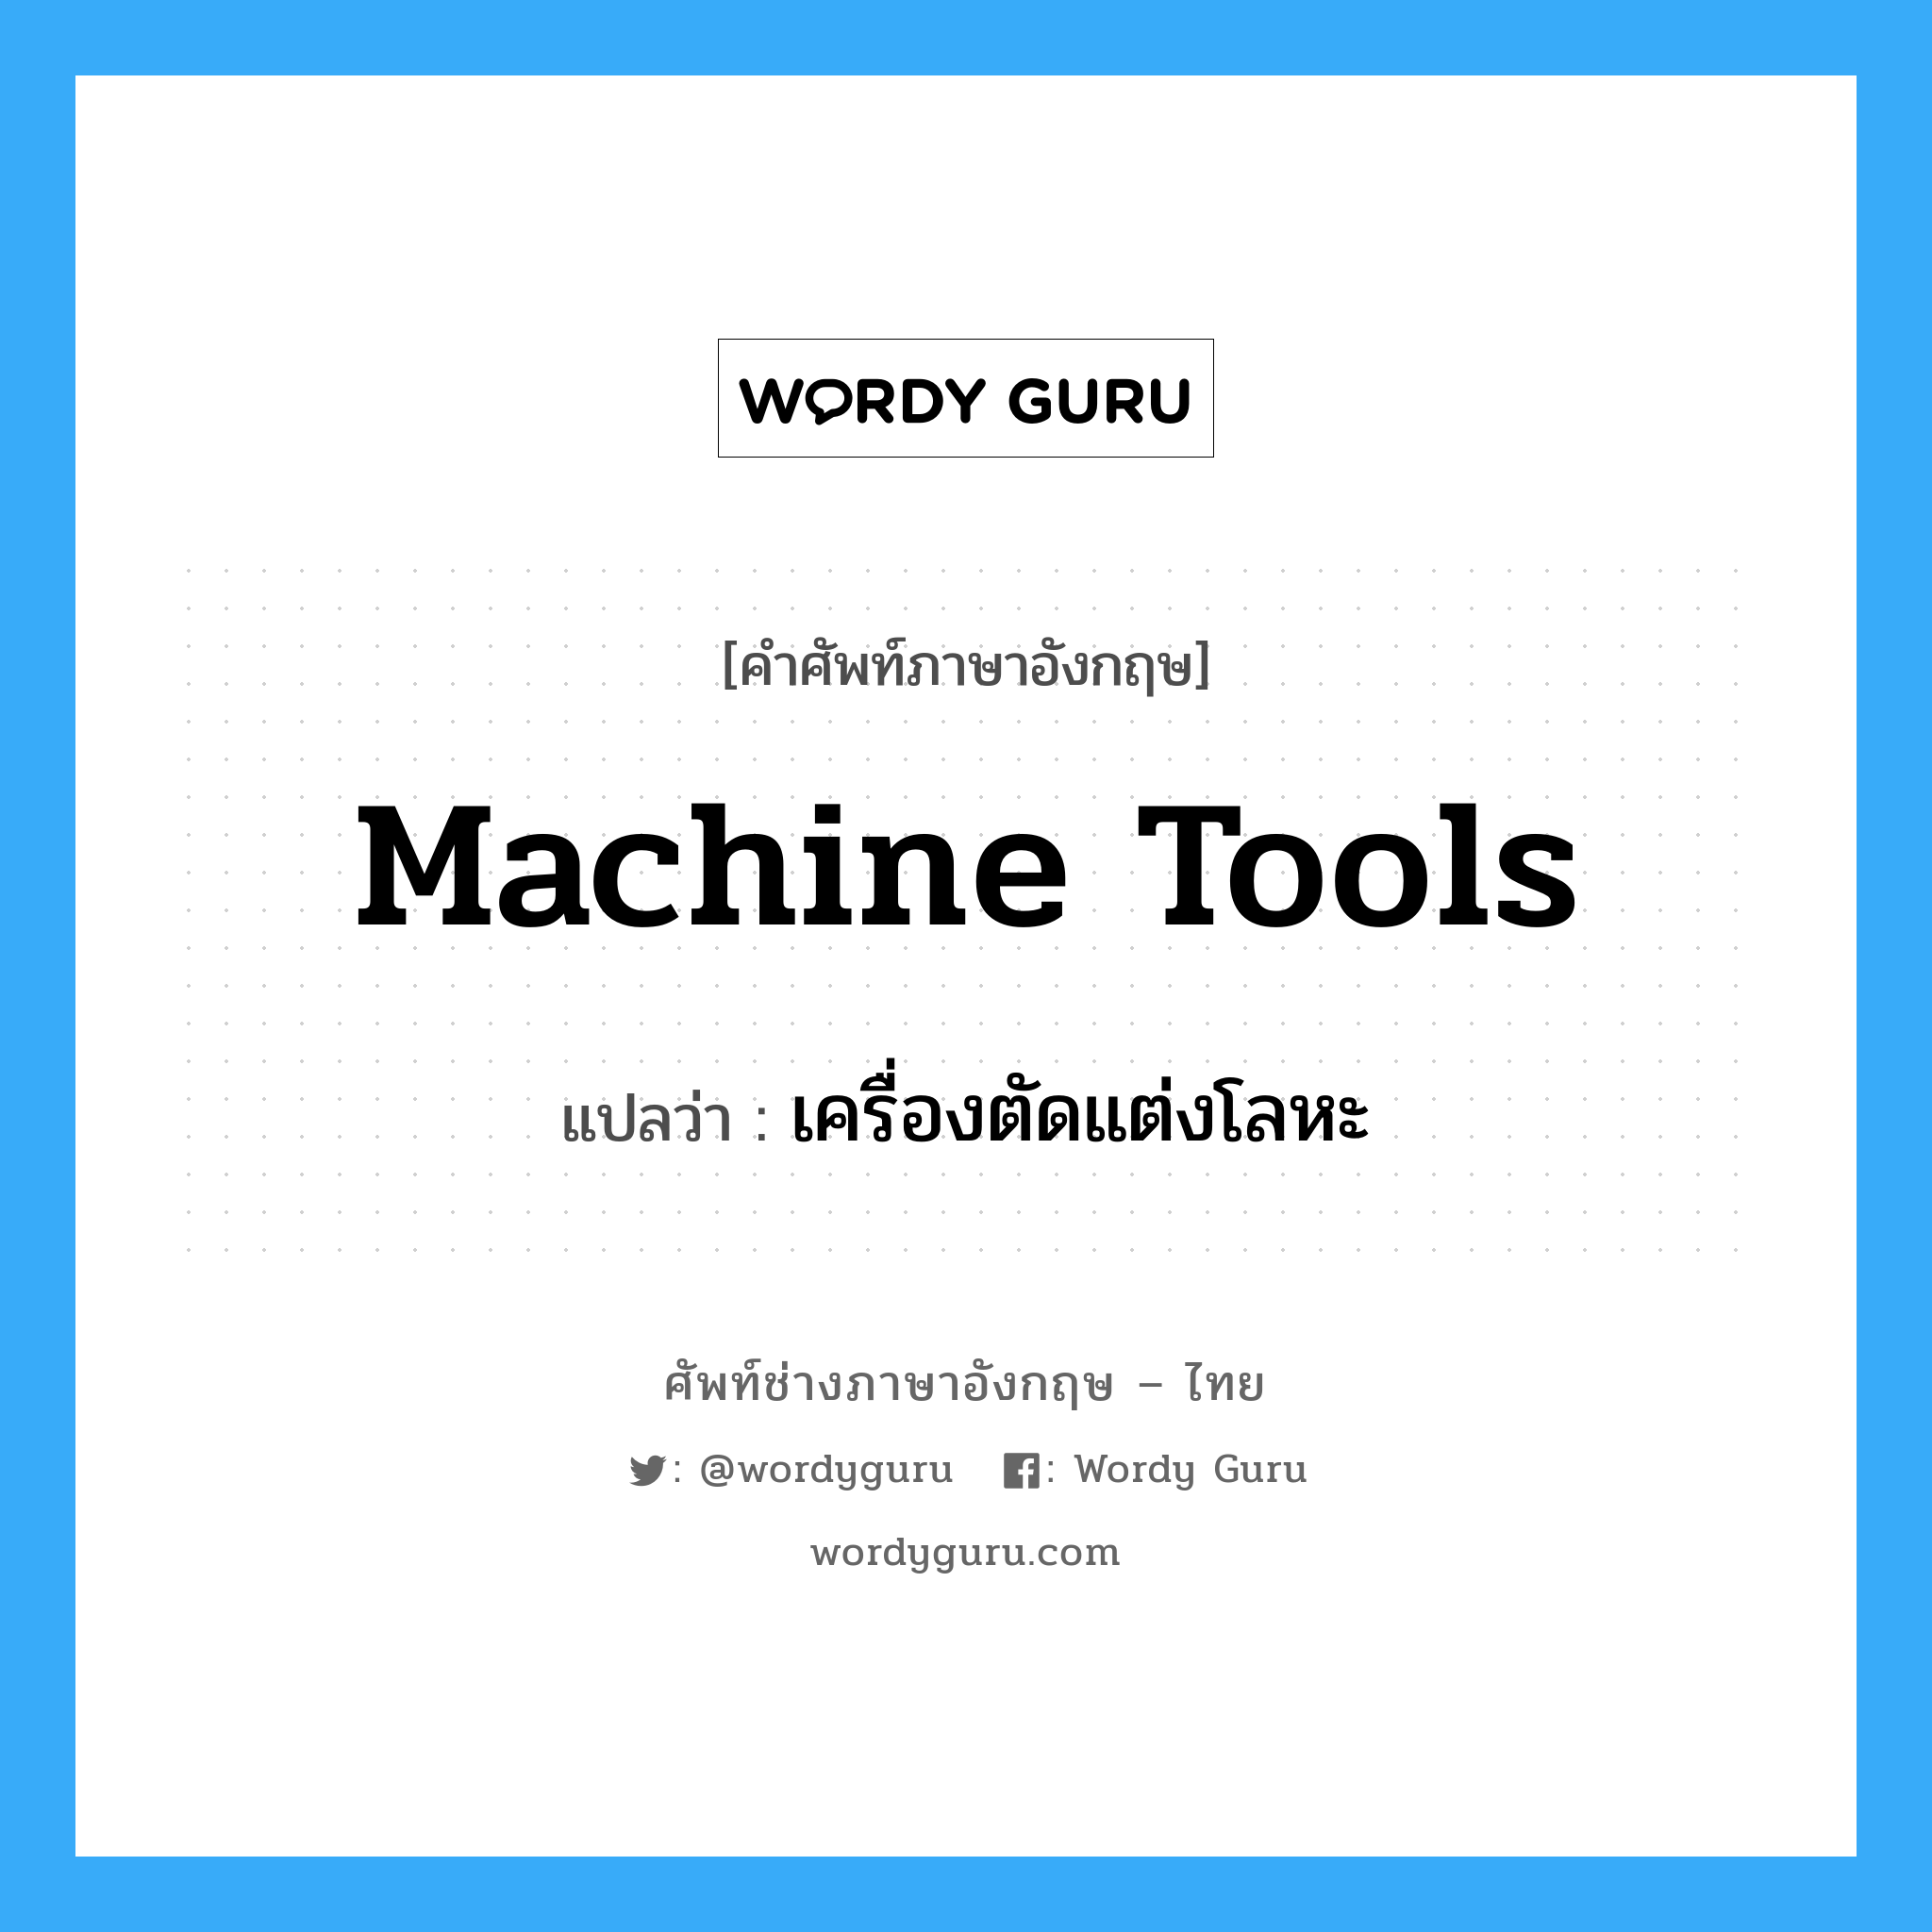 เครื่องตัดแต่งโลหะ ภาษาอังกฤษ?, คำศัพท์ช่างภาษาอังกฤษ - ไทย เครื่องตัดแต่งโลหะ คำศัพท์ภาษาอังกฤษ เครื่องตัดแต่งโลหะ แปลว่า machine tools